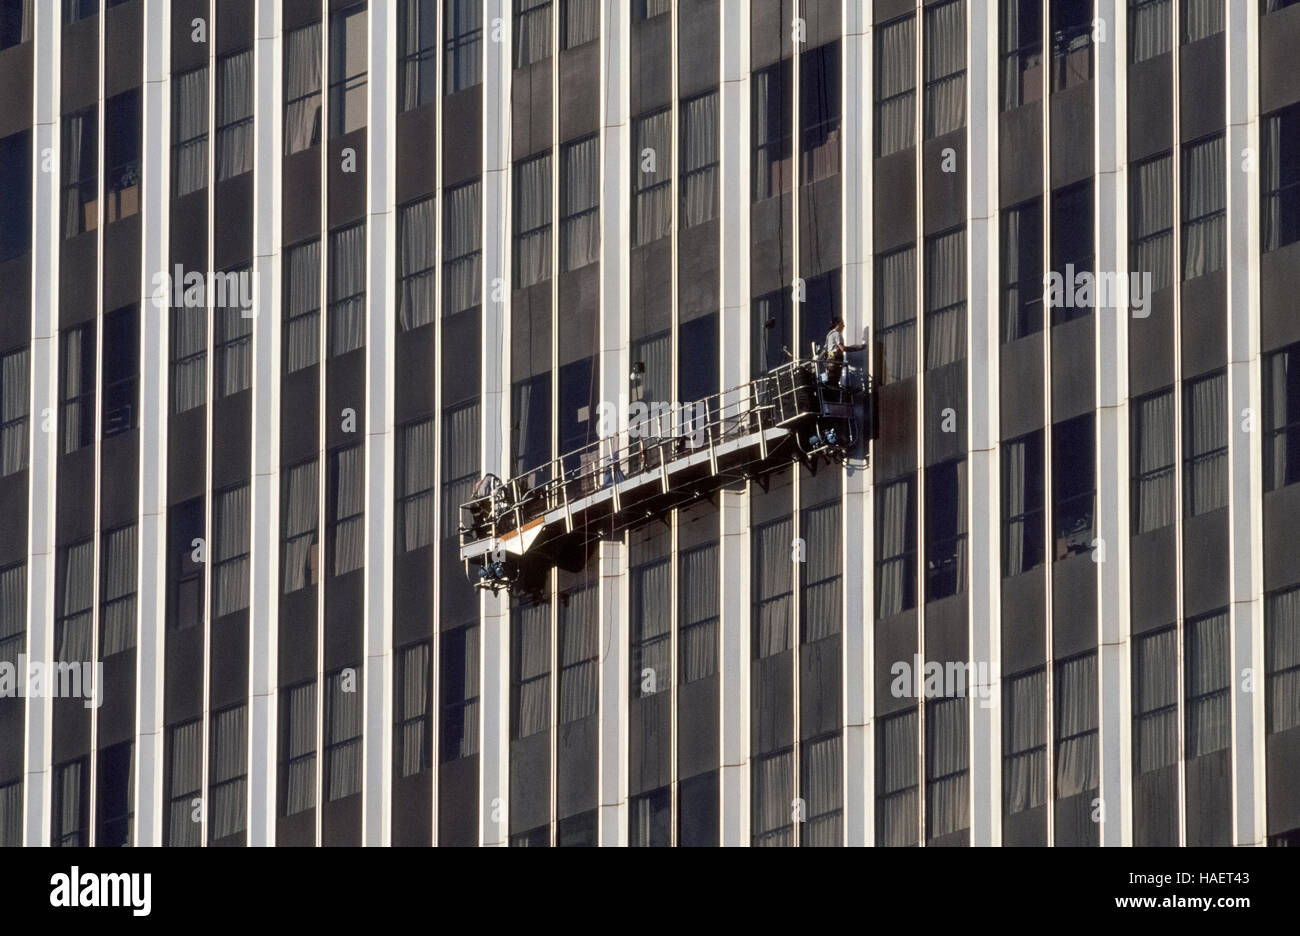 Furchtlos Fenster Reiniger arbeiten hoch über dem Boden aus einem  angehaltenen Gerüst, das ist eine bewegliche Plattform, bekannt als ein  Schaukel-Bühne, die an Drahtseilen steigt vom Dach eines Hochhauses in Los  Angeles,